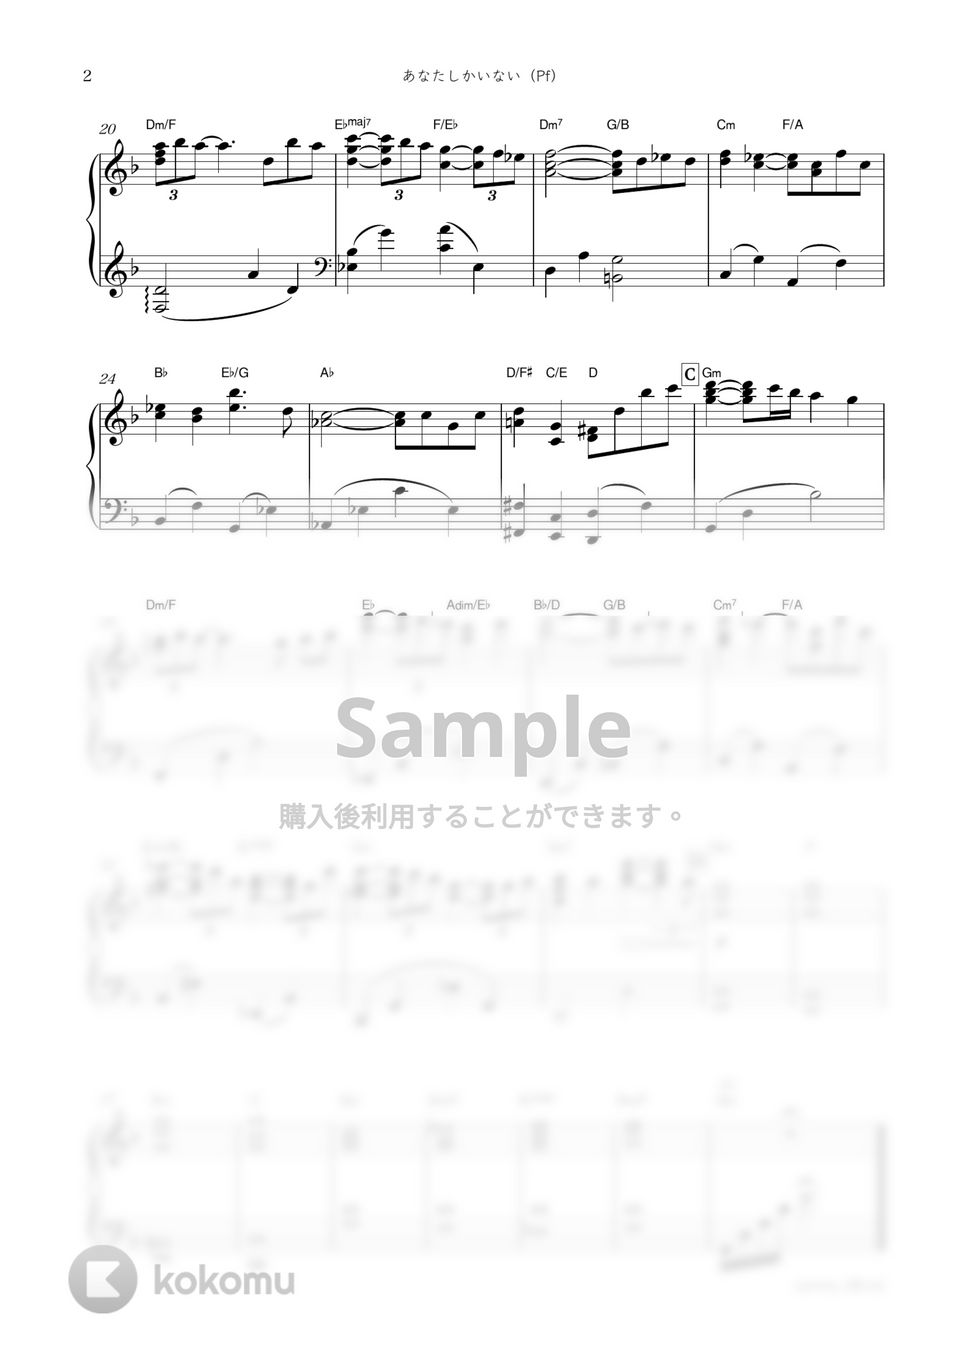 ドラマ『あなたがしてくれなくても』OST - あなたしかいない (Pf) by sammy